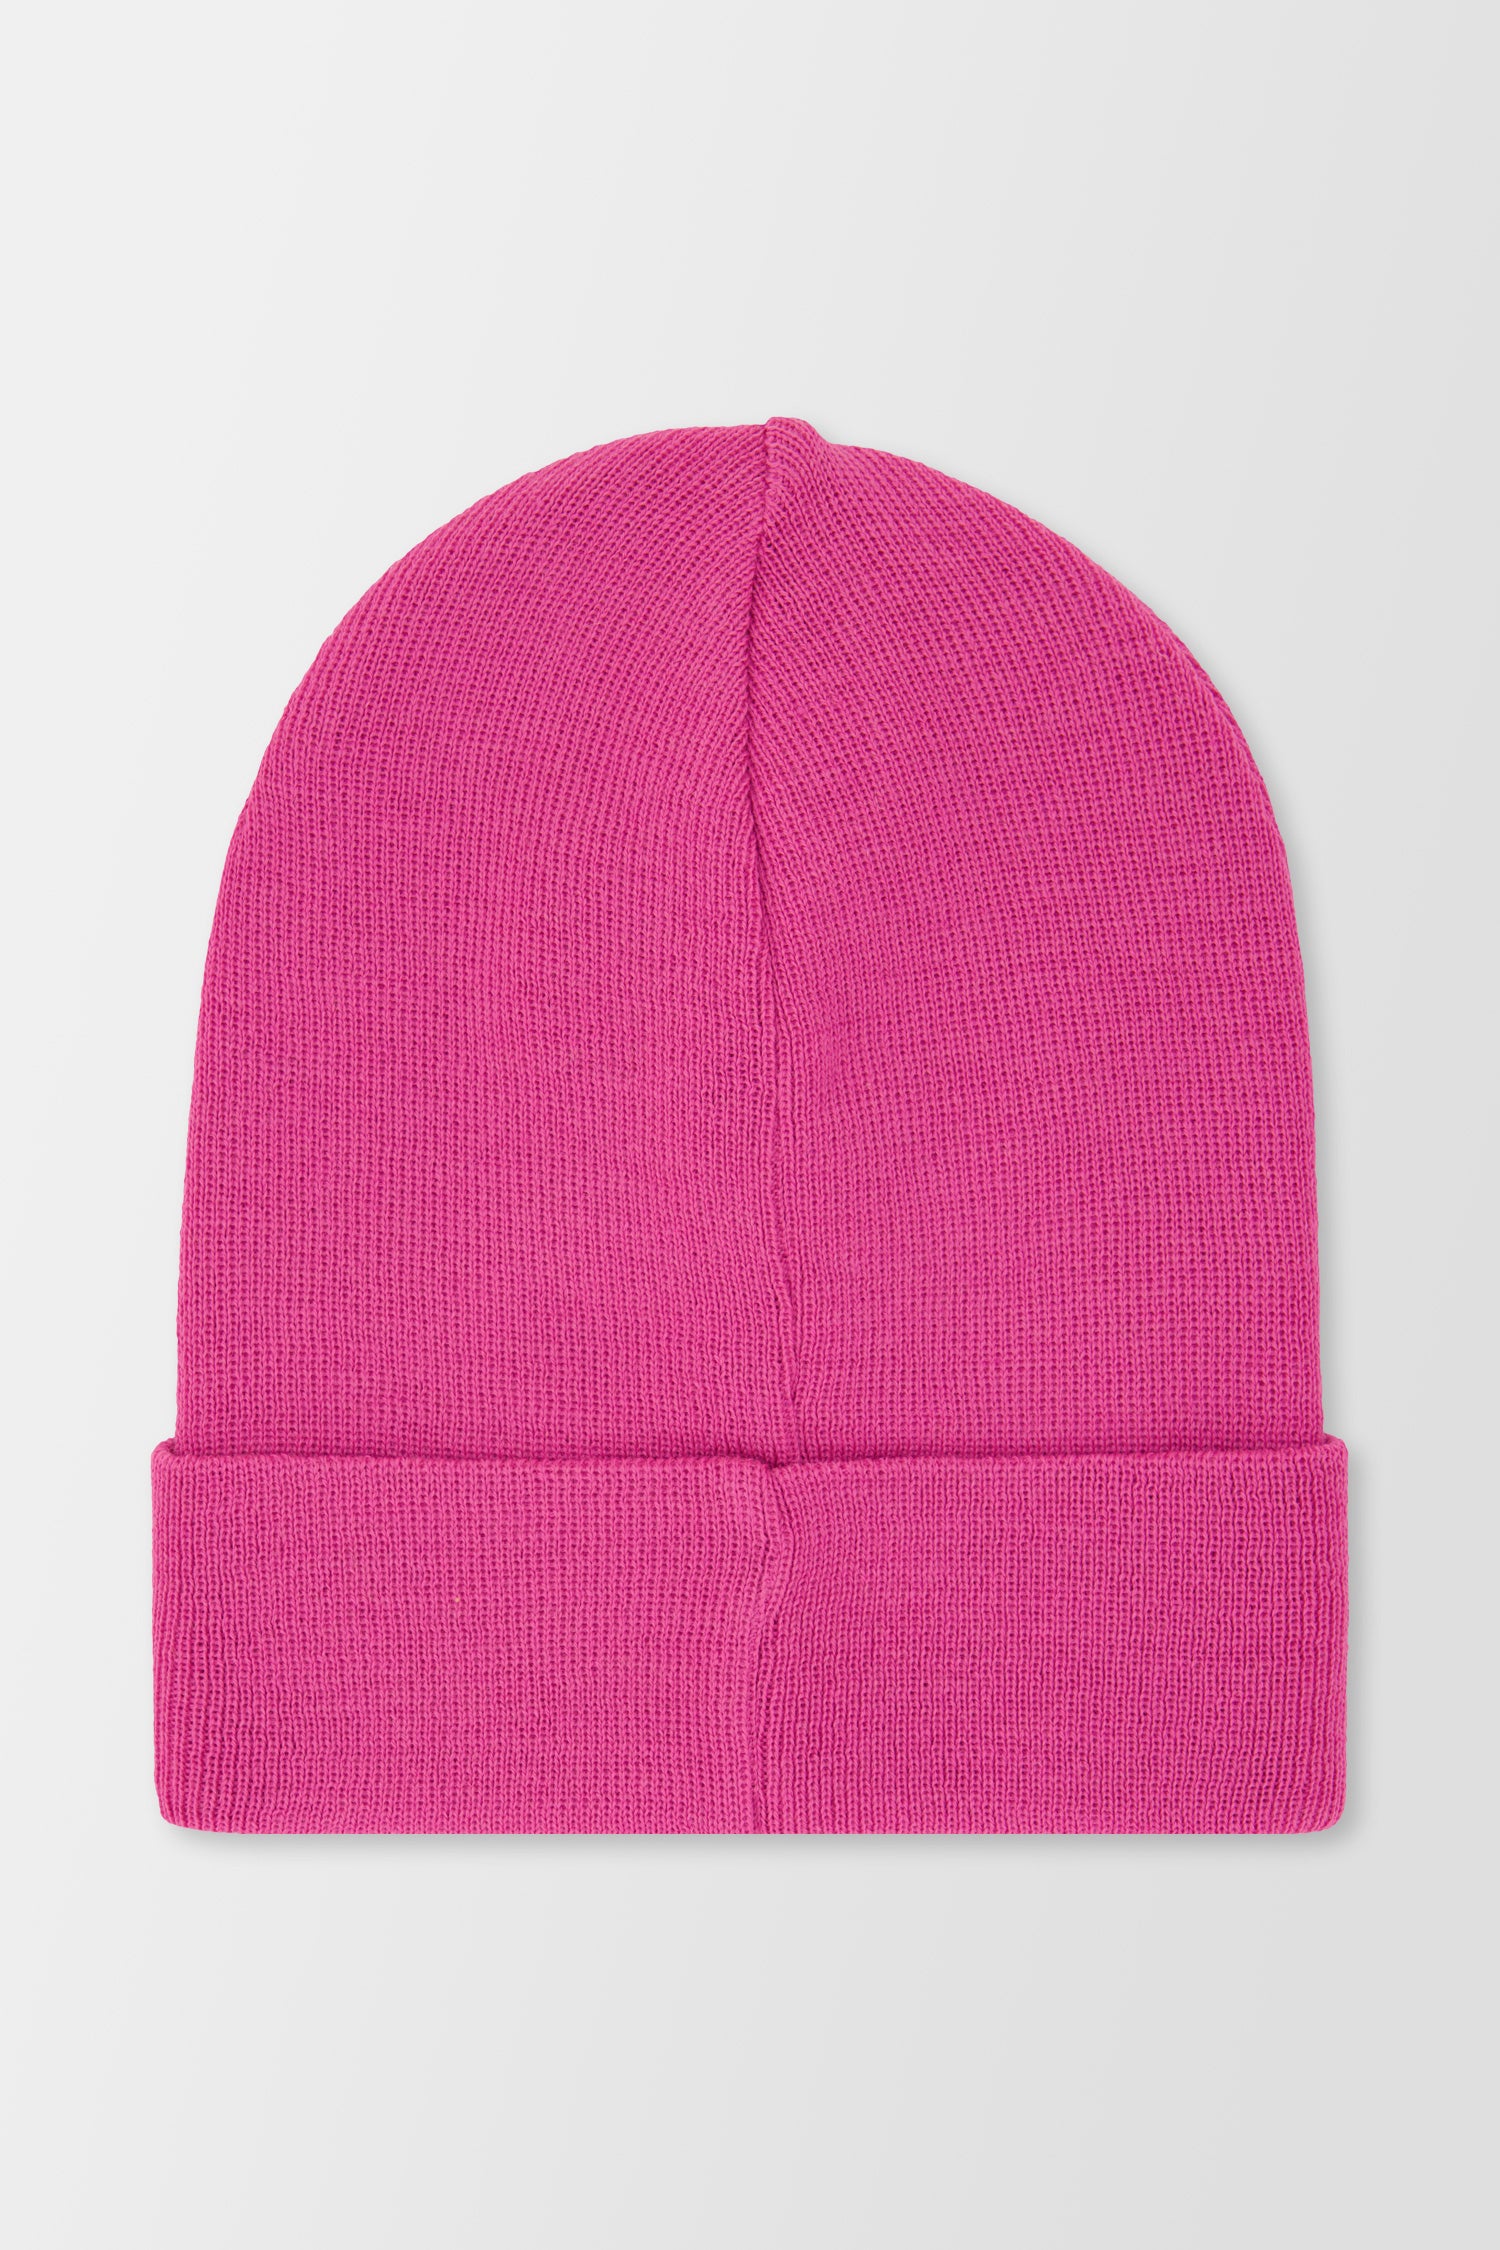 Philipp Plein Pink Hat